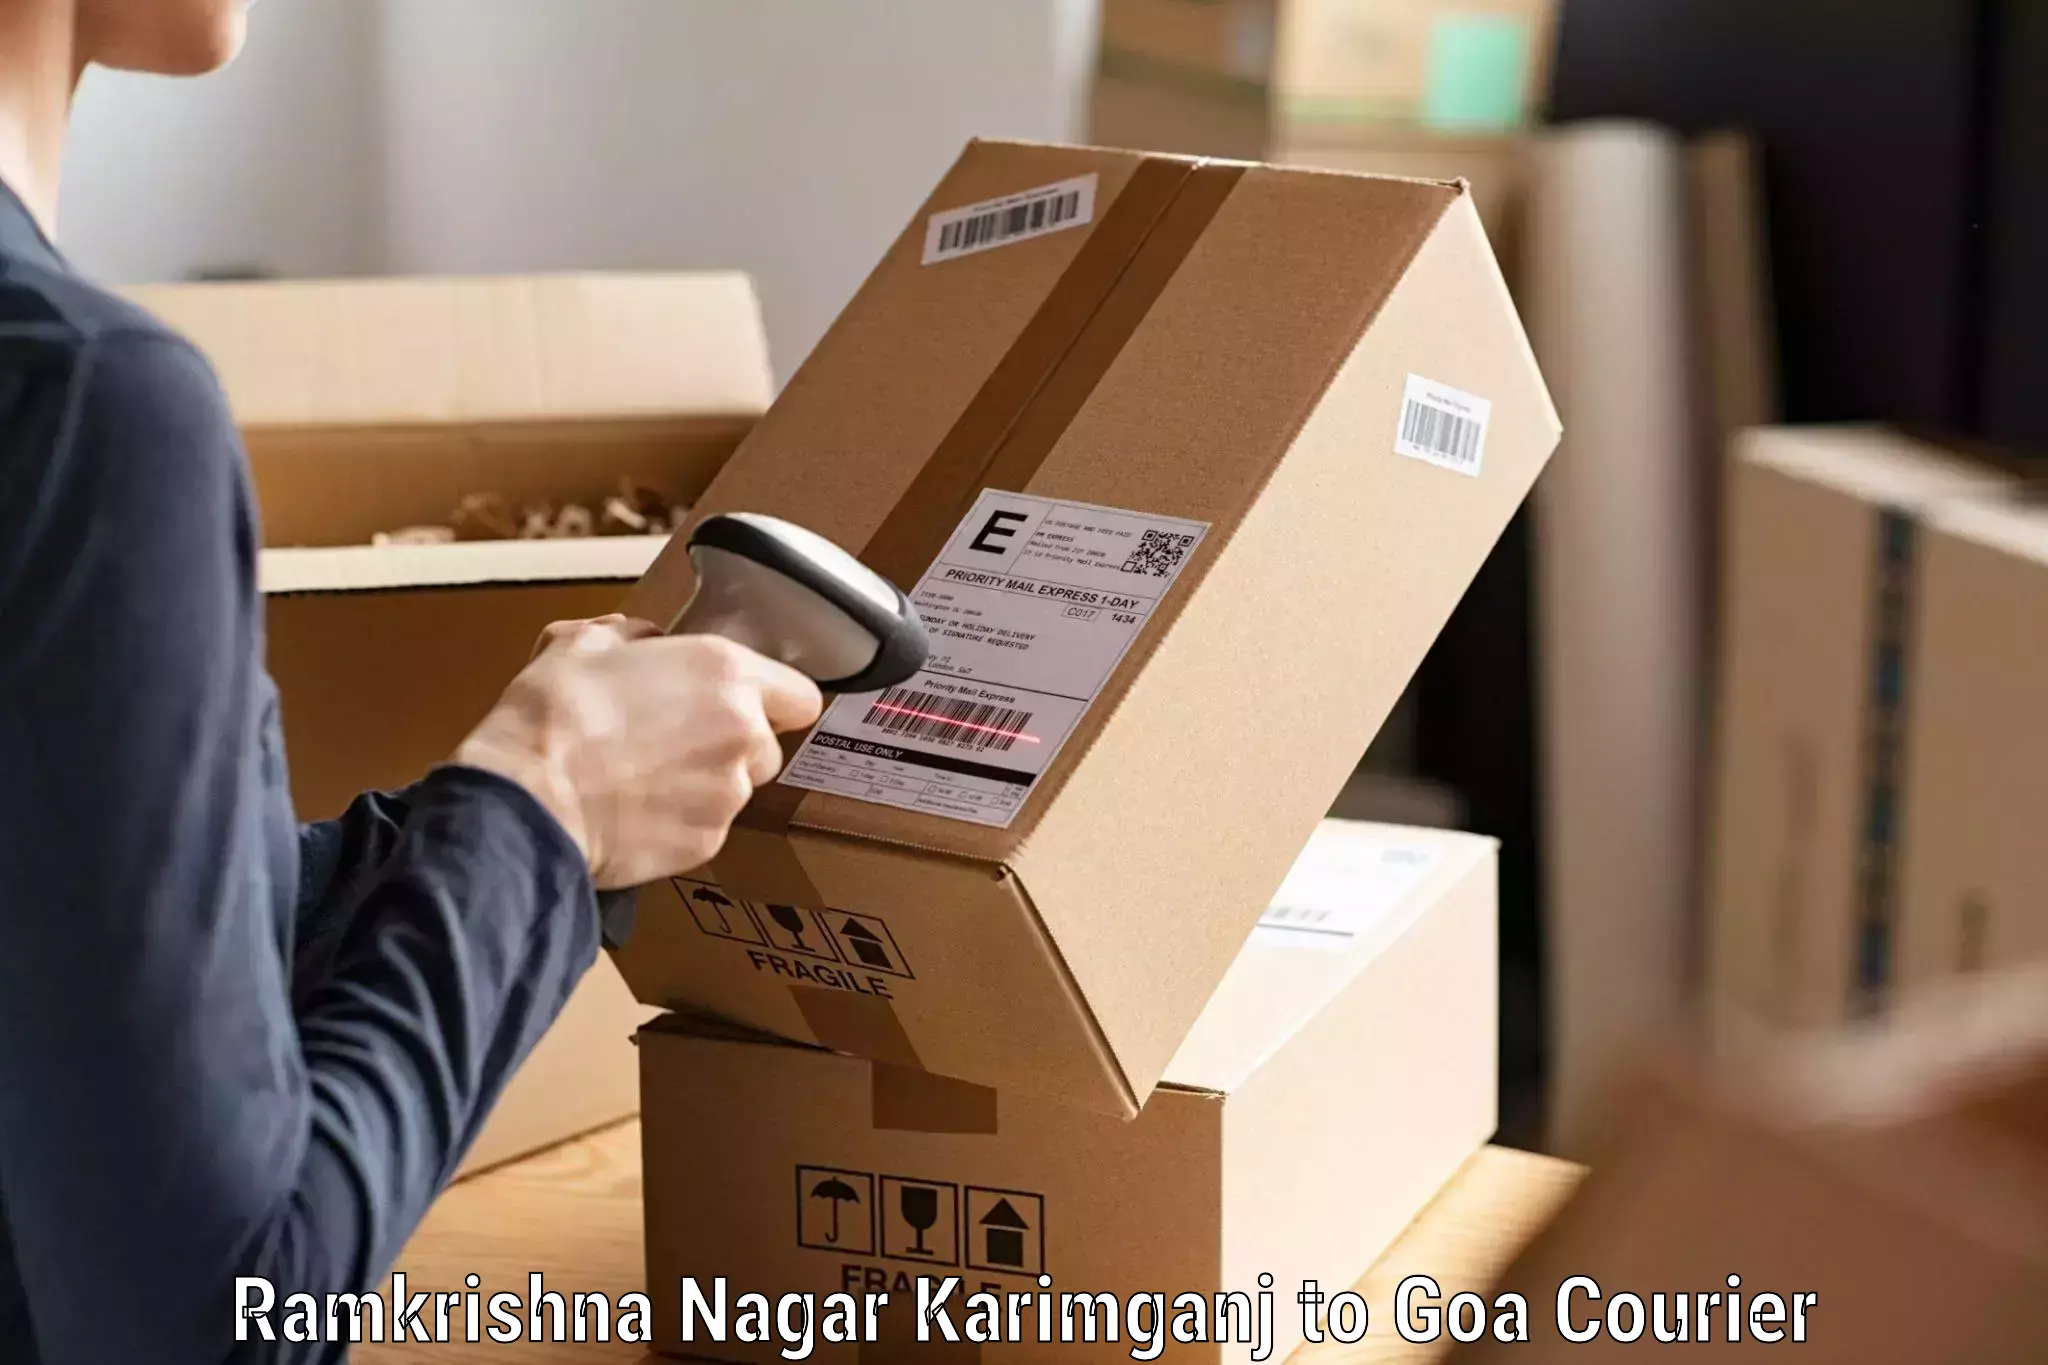 Specialized shipment handling Ramkrishna Nagar Karimganj to Panaji